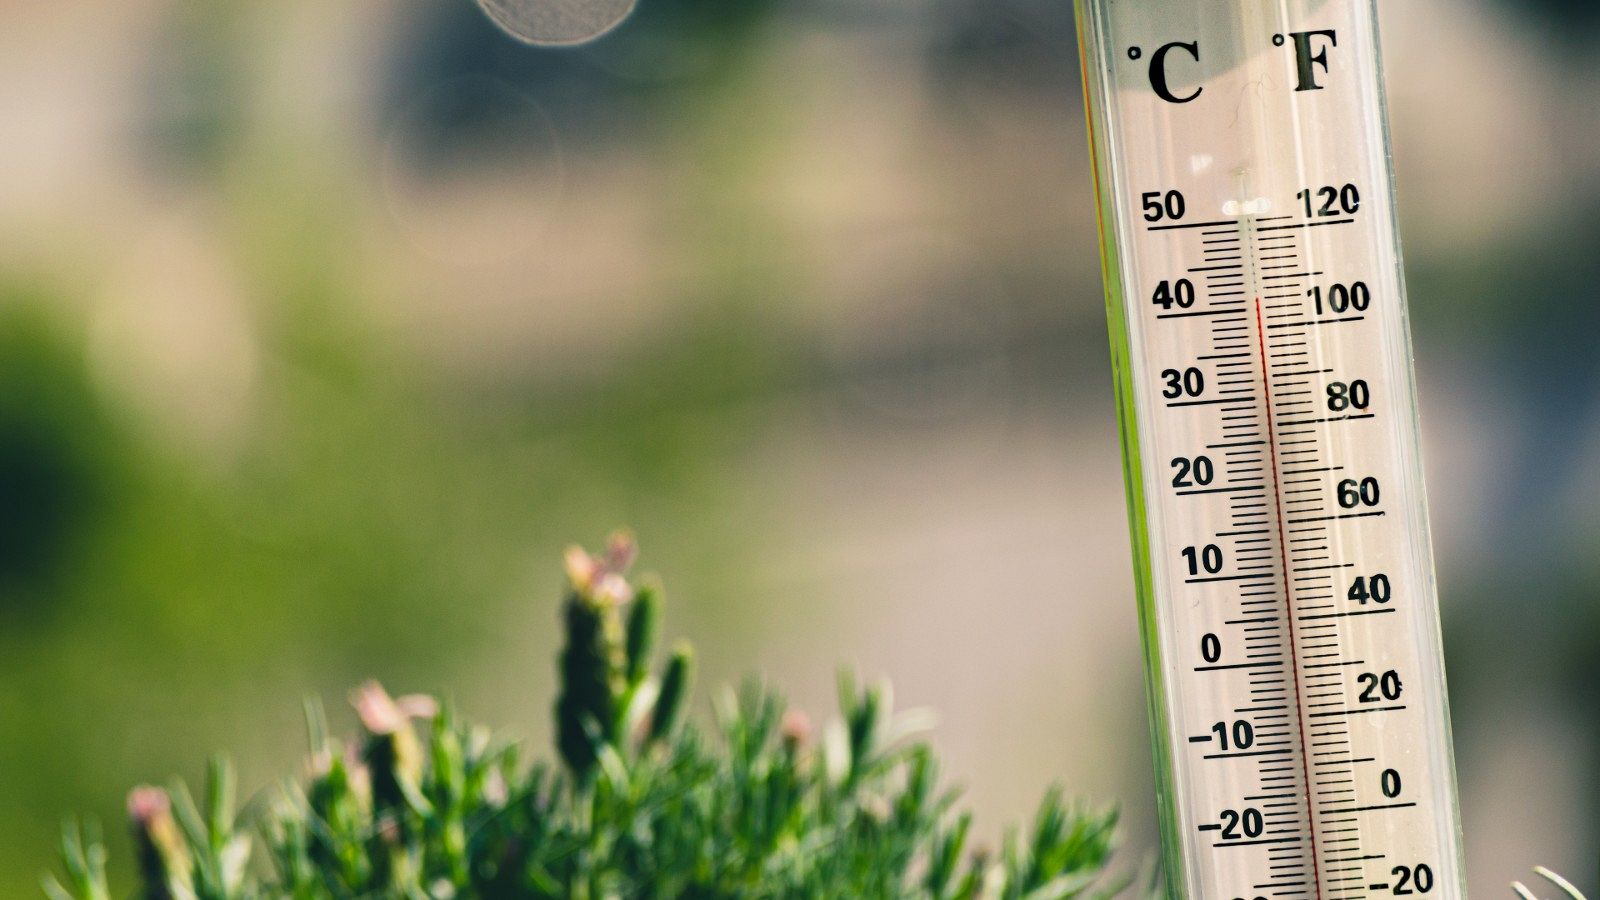 Episodi de calor extrema amb xifres superiors als 30ºC